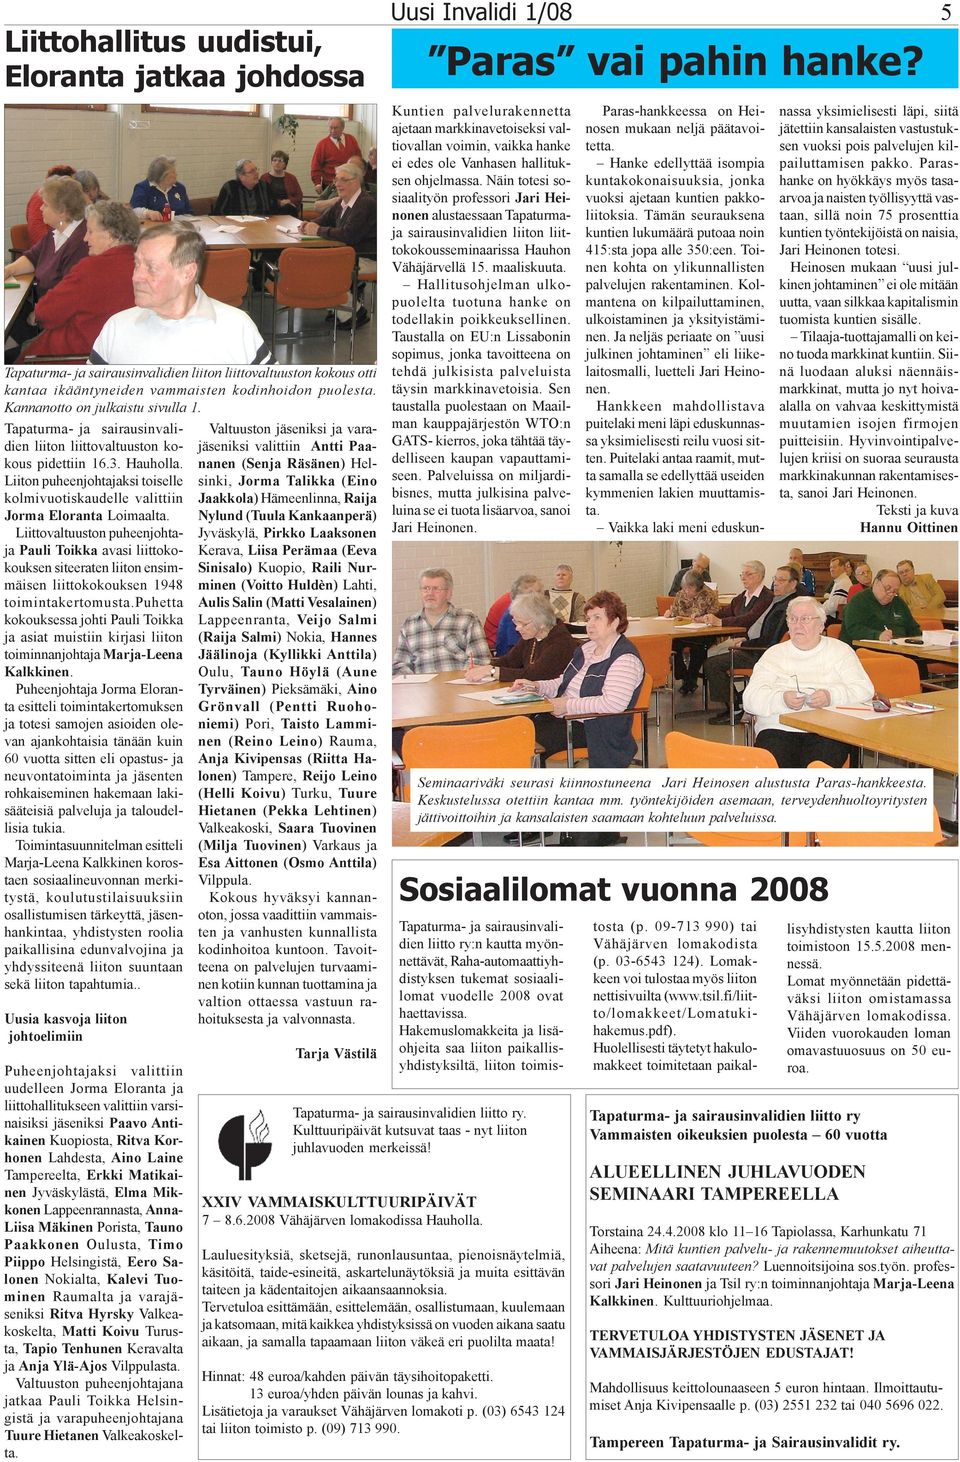 Tapaturma- ja sairausinvalidien liiton liittovaltuuston kokous pidettiin 16.3. Hauholla. Liiton puheenjohtajaksi toiselle kolmivuotiskaudelle valittiin Jorma Eloranta Loimaalta.